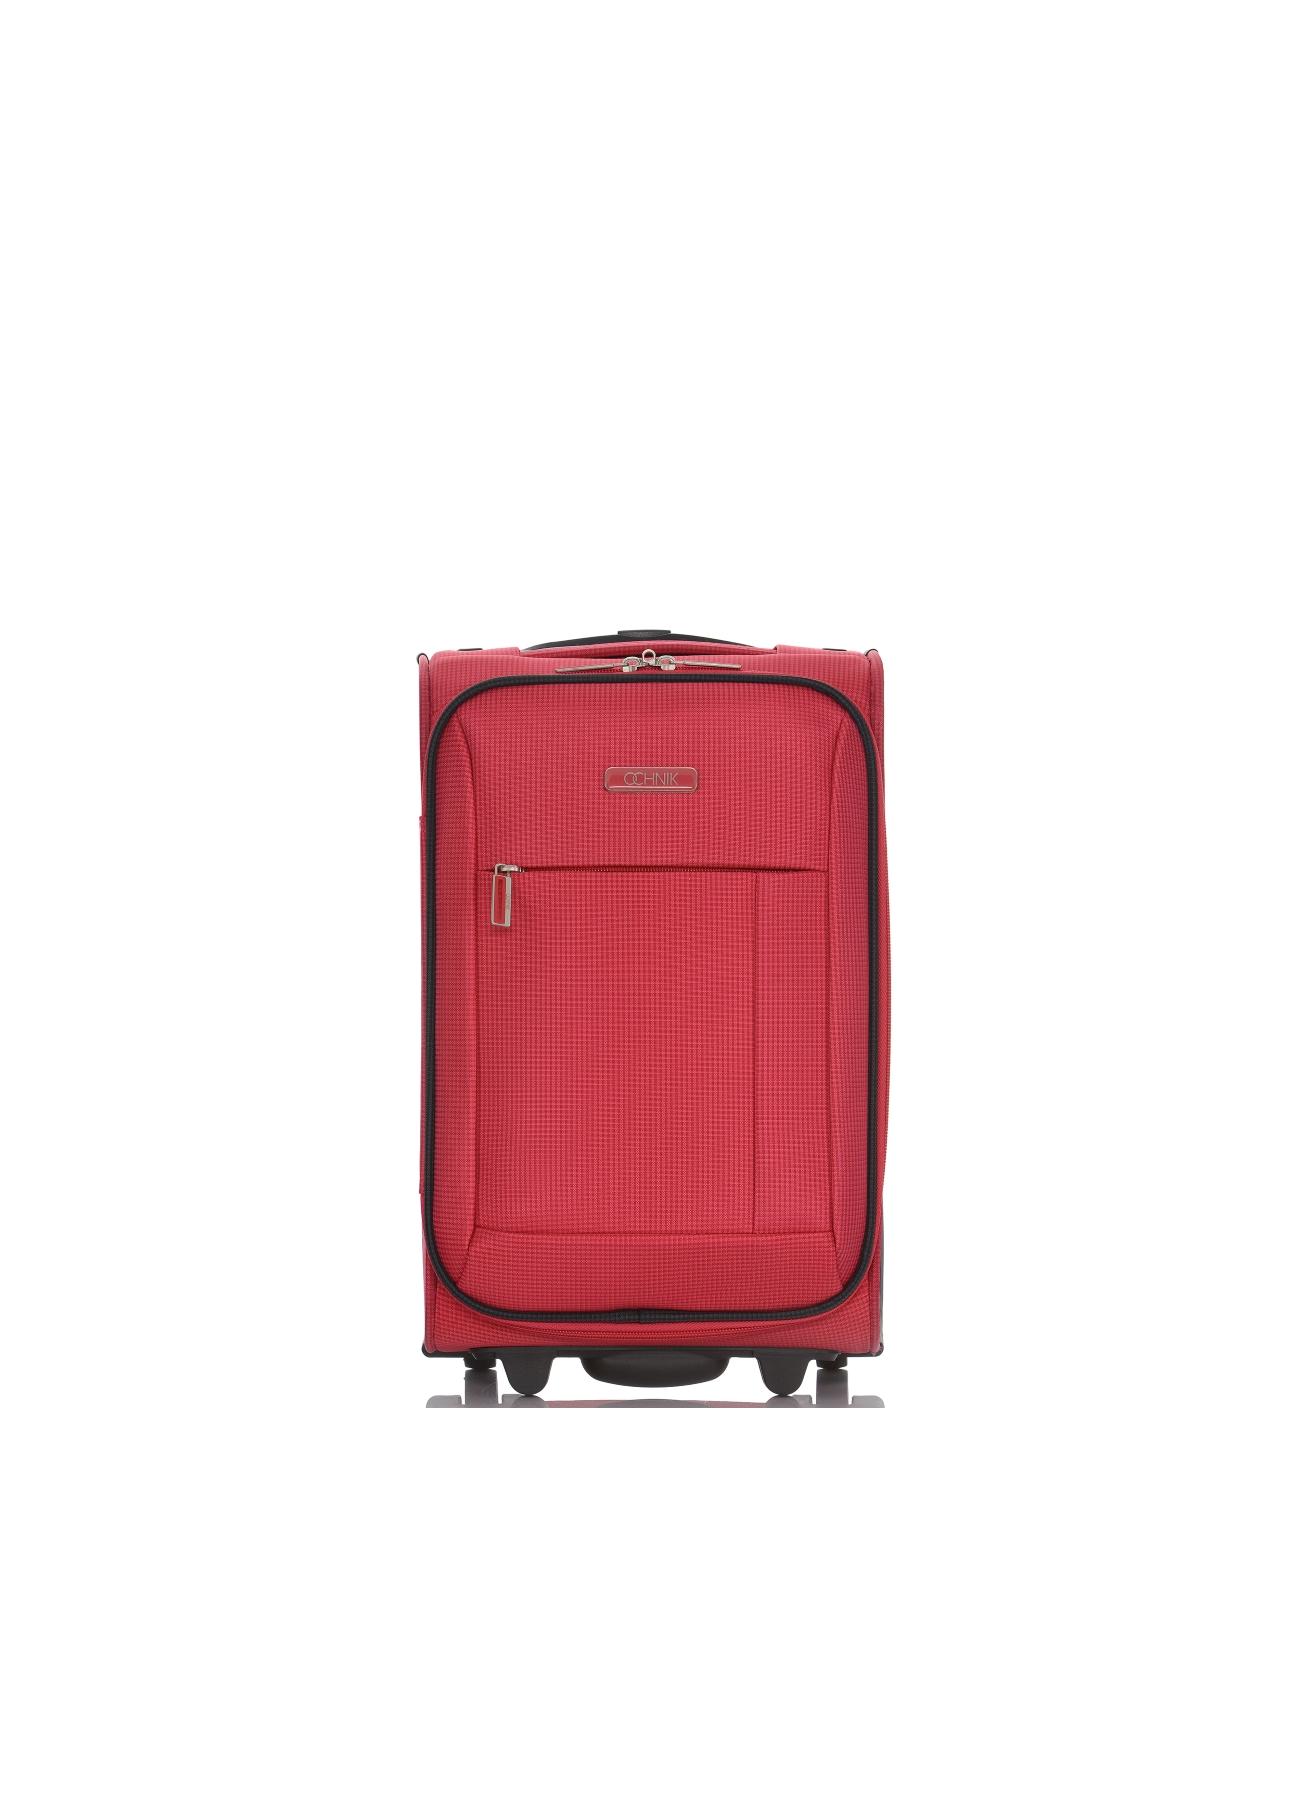 Kabinowa walizka na kółkach WALNY-0029-42-15R